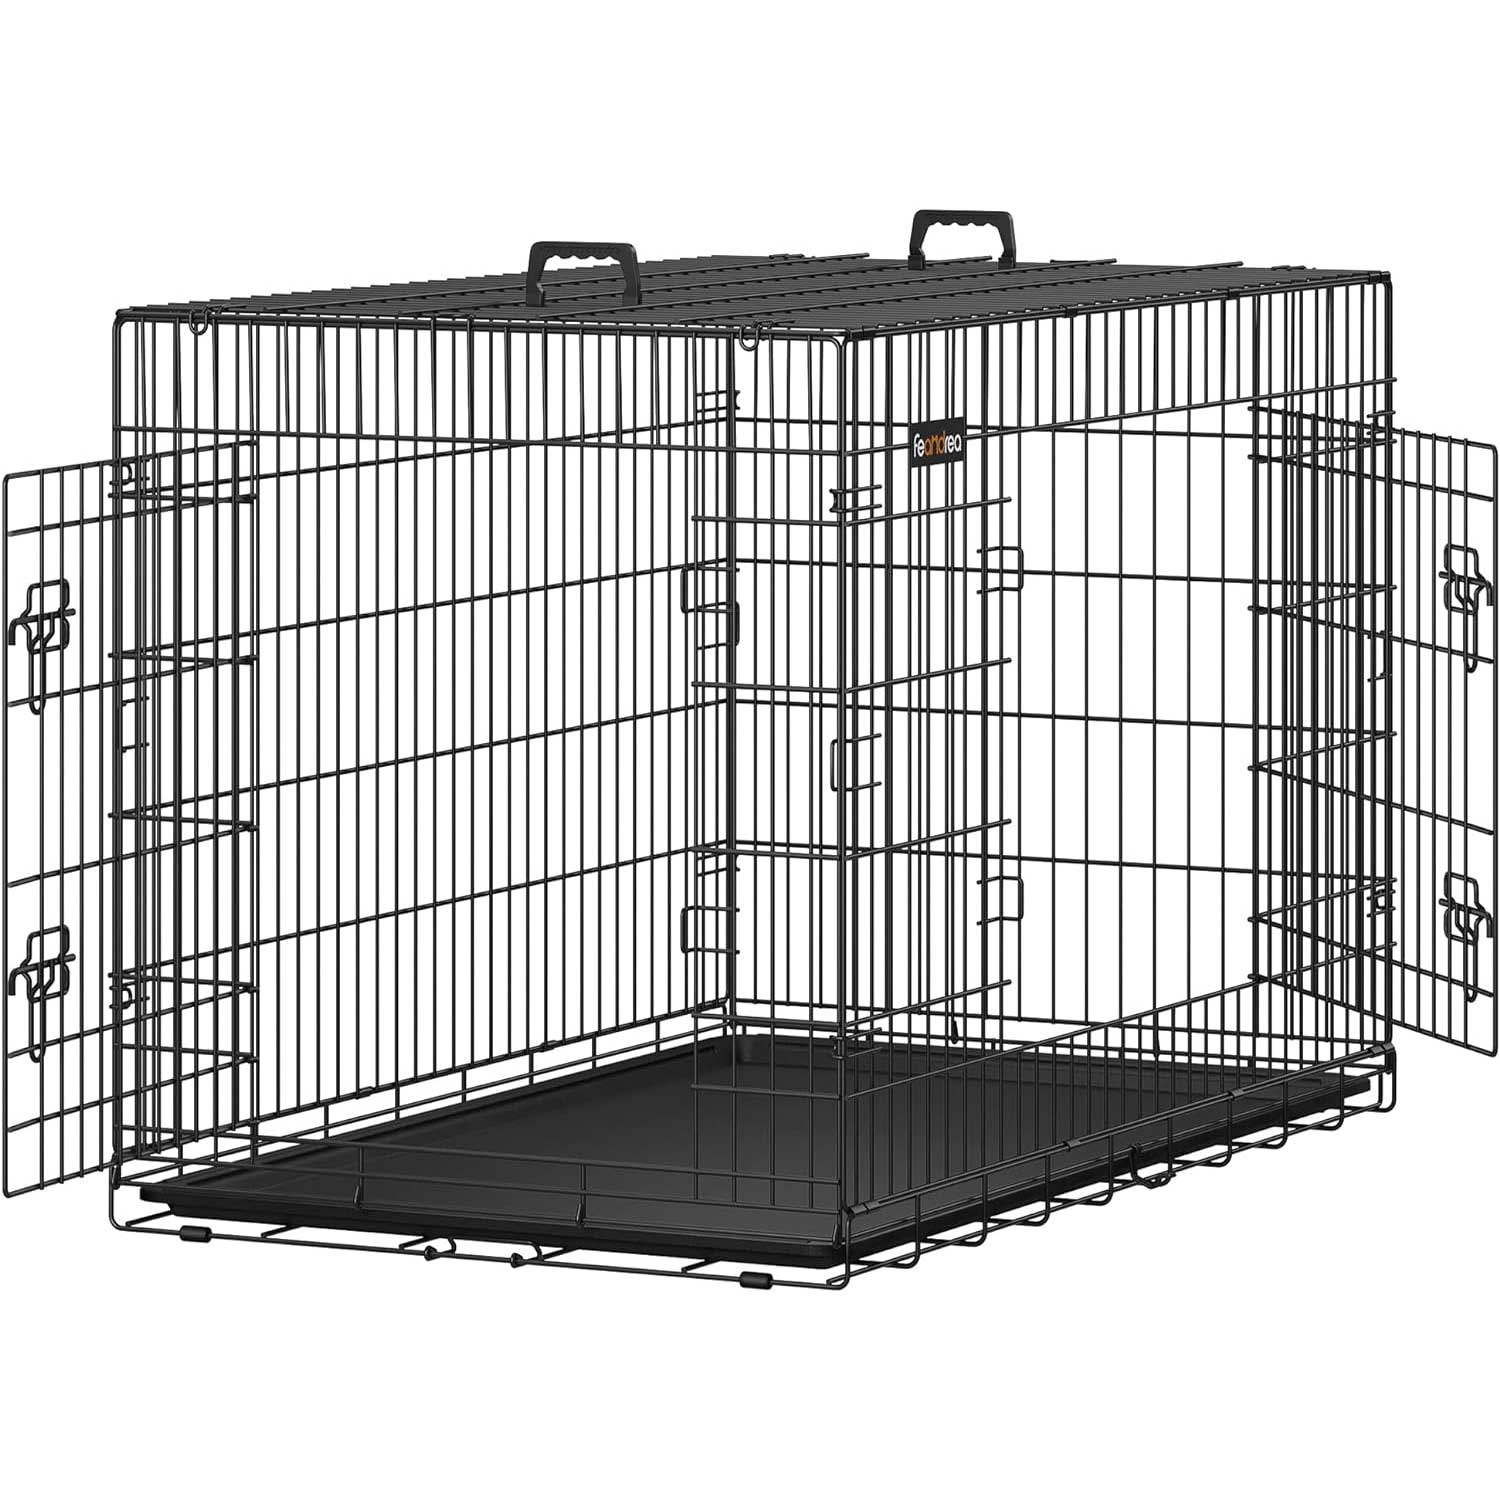 Hundekäfig, XXL, klappbar, mit 2 Türen, ausziehbare Kunststoffschale, Welpen Laufstall, 122x74,5x80,5 cm, schwarz, FEANDREA, 3